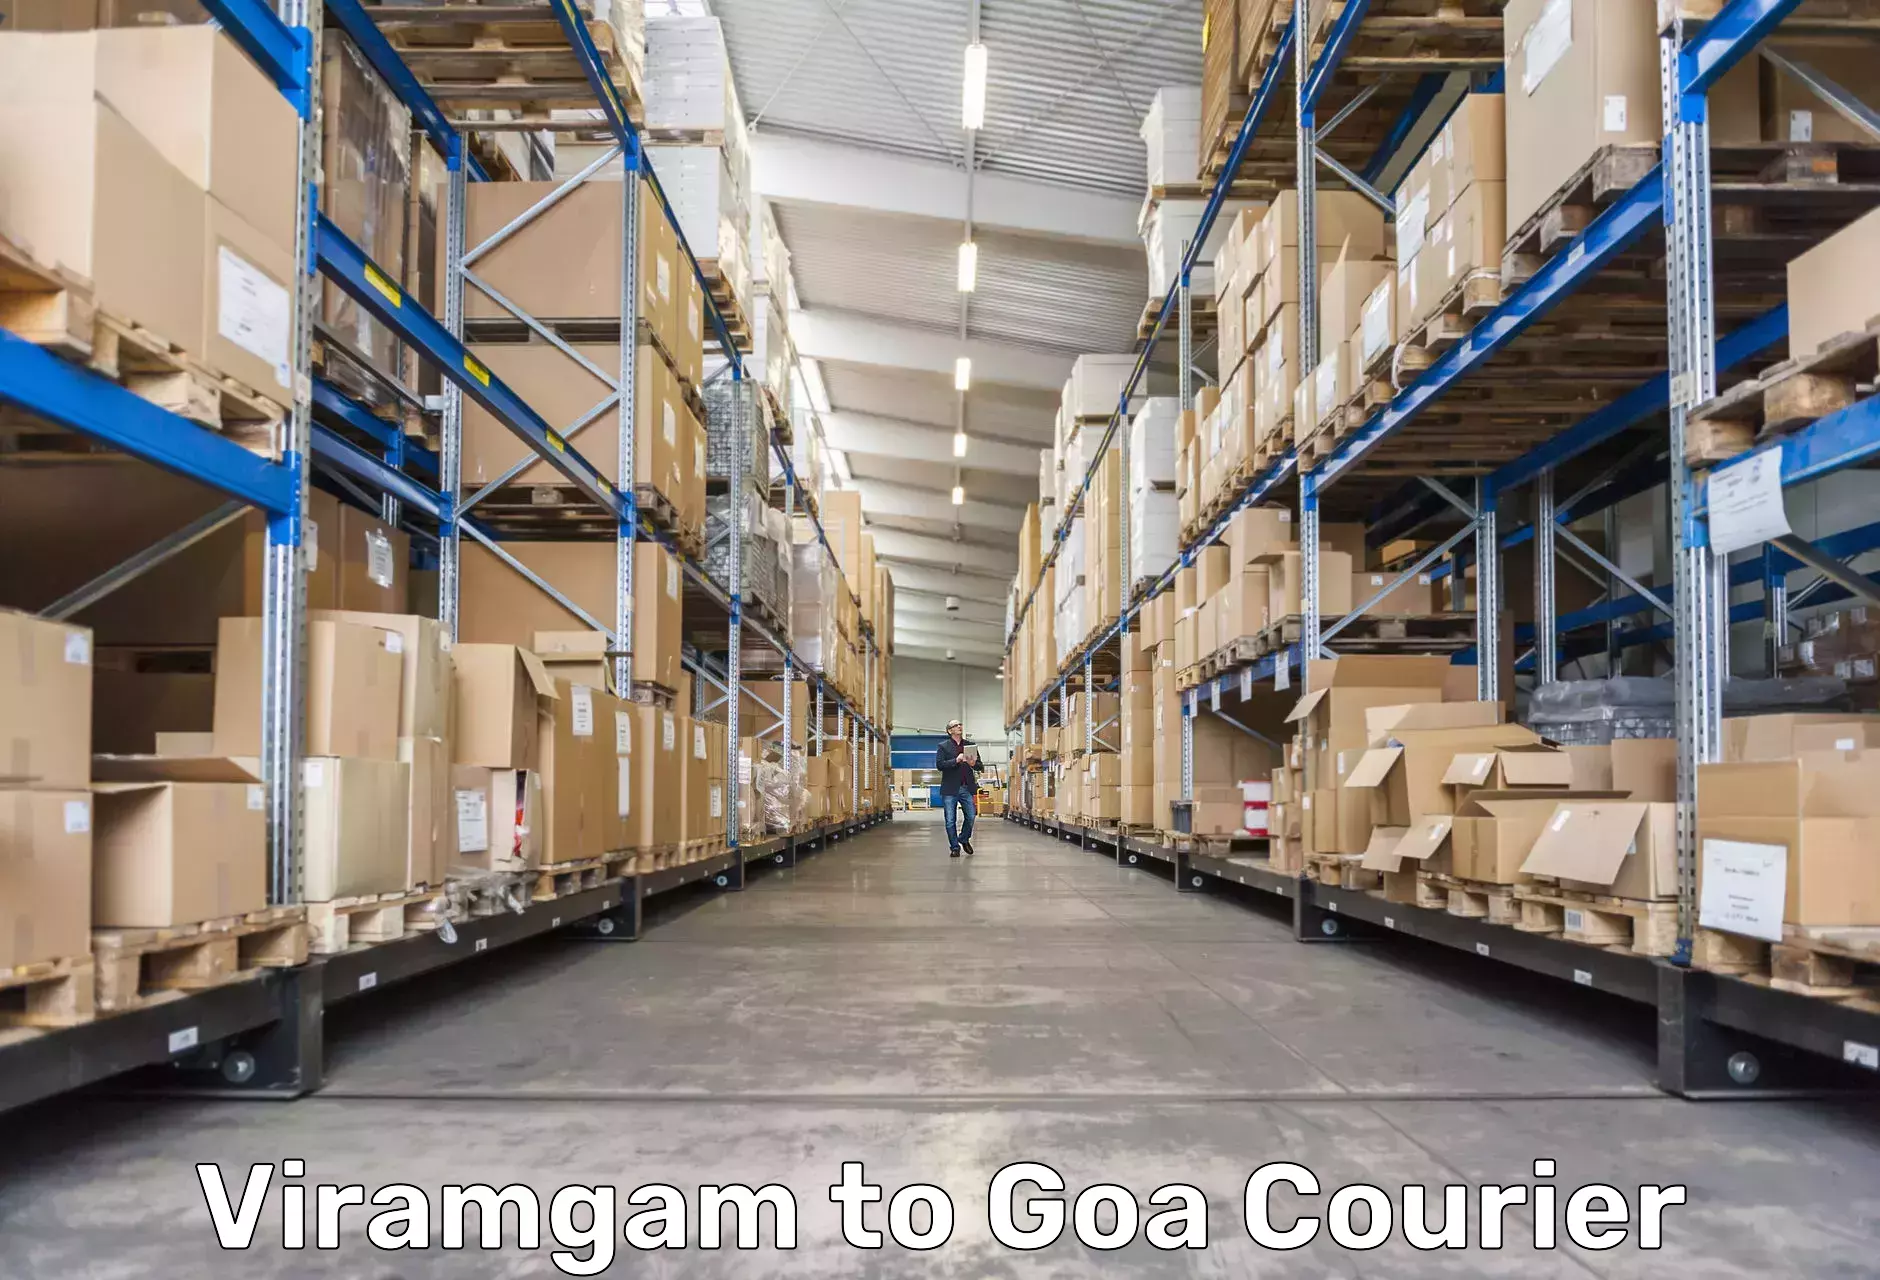 Tracking updates in Viramgam to Goa